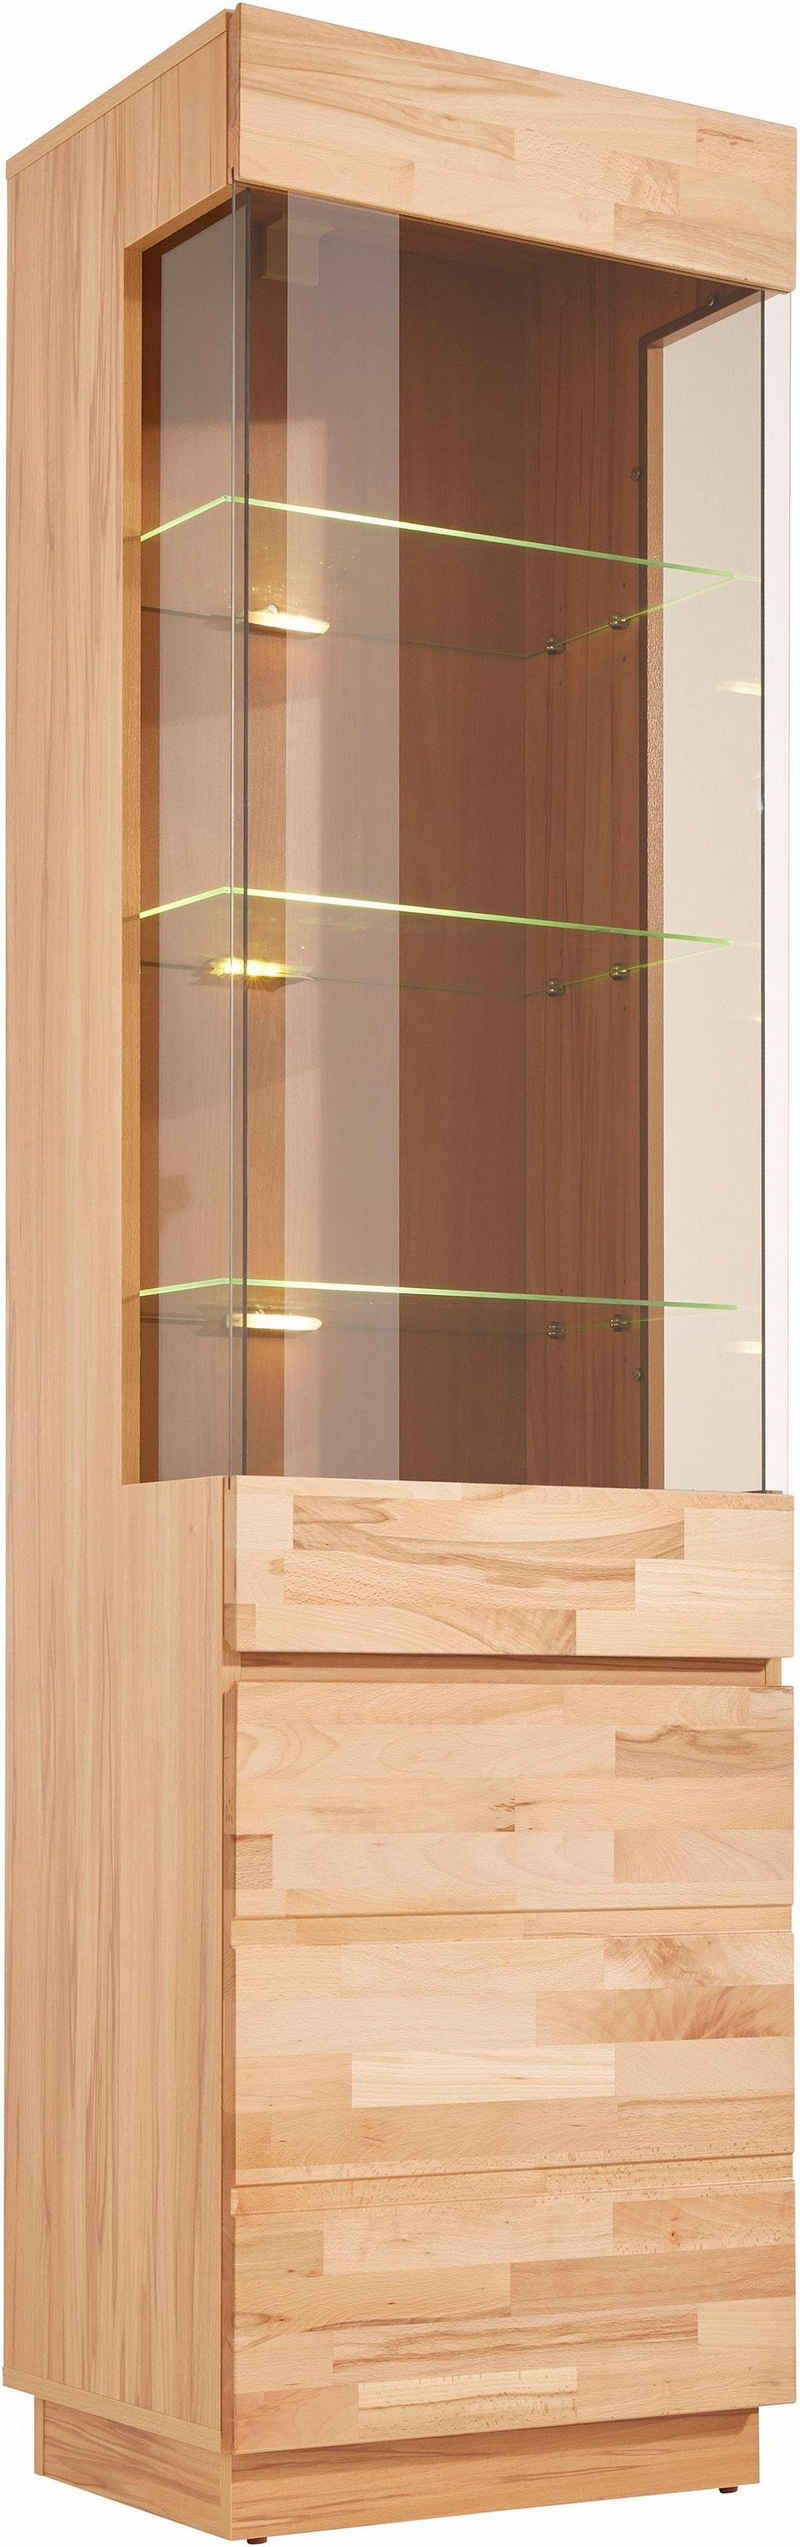 Home affaire Vitrine Höhe 184 cm, Türen aus Massivholz, mit Glaseinsatz